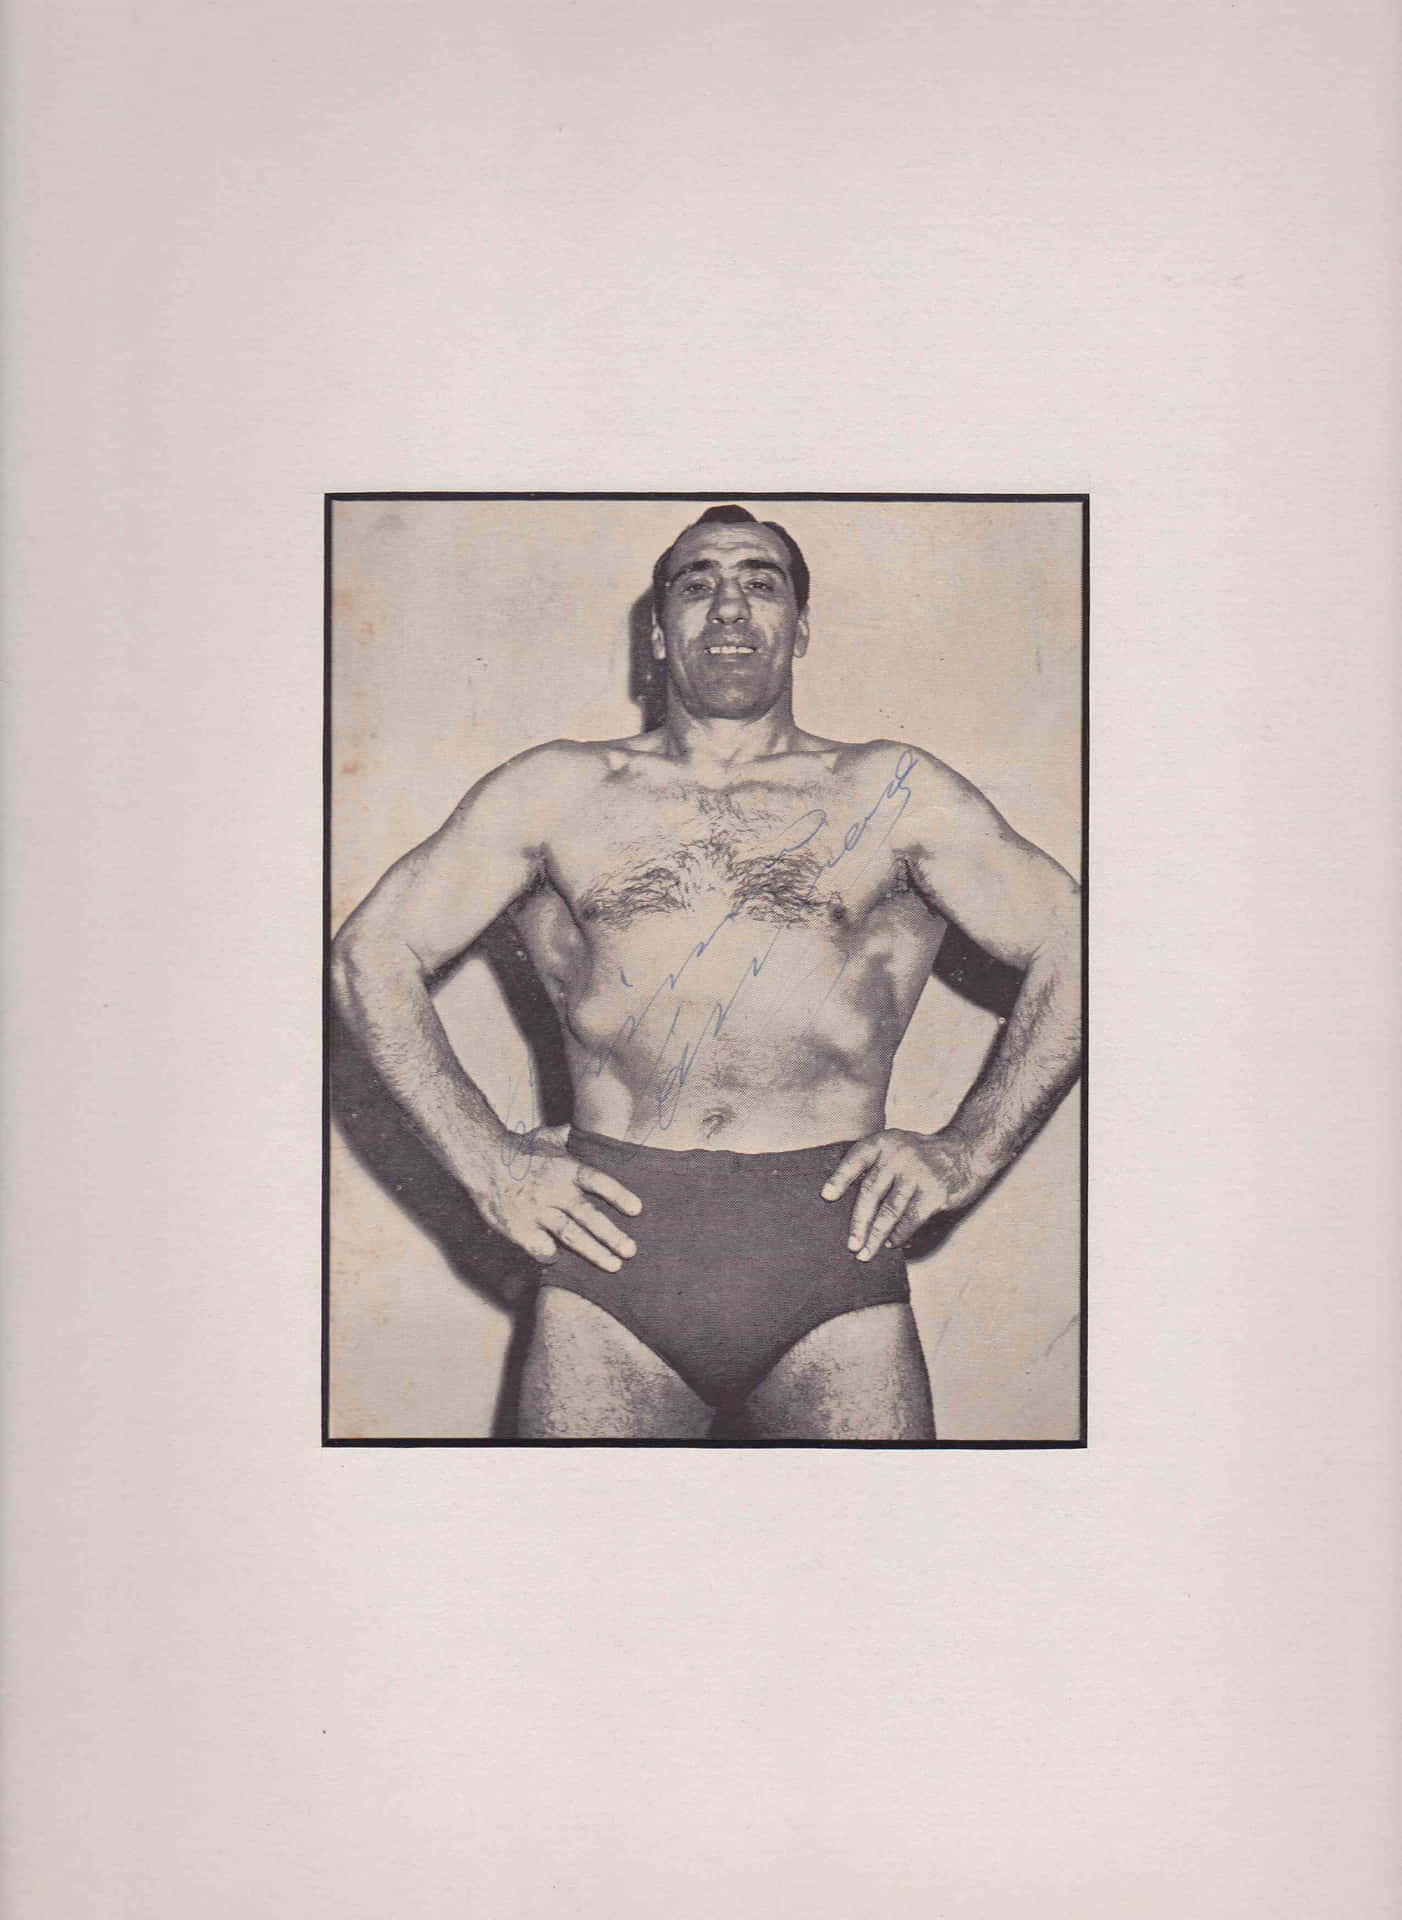 Italian Professional Boxer Primo Carnera Minimalist Art Picture